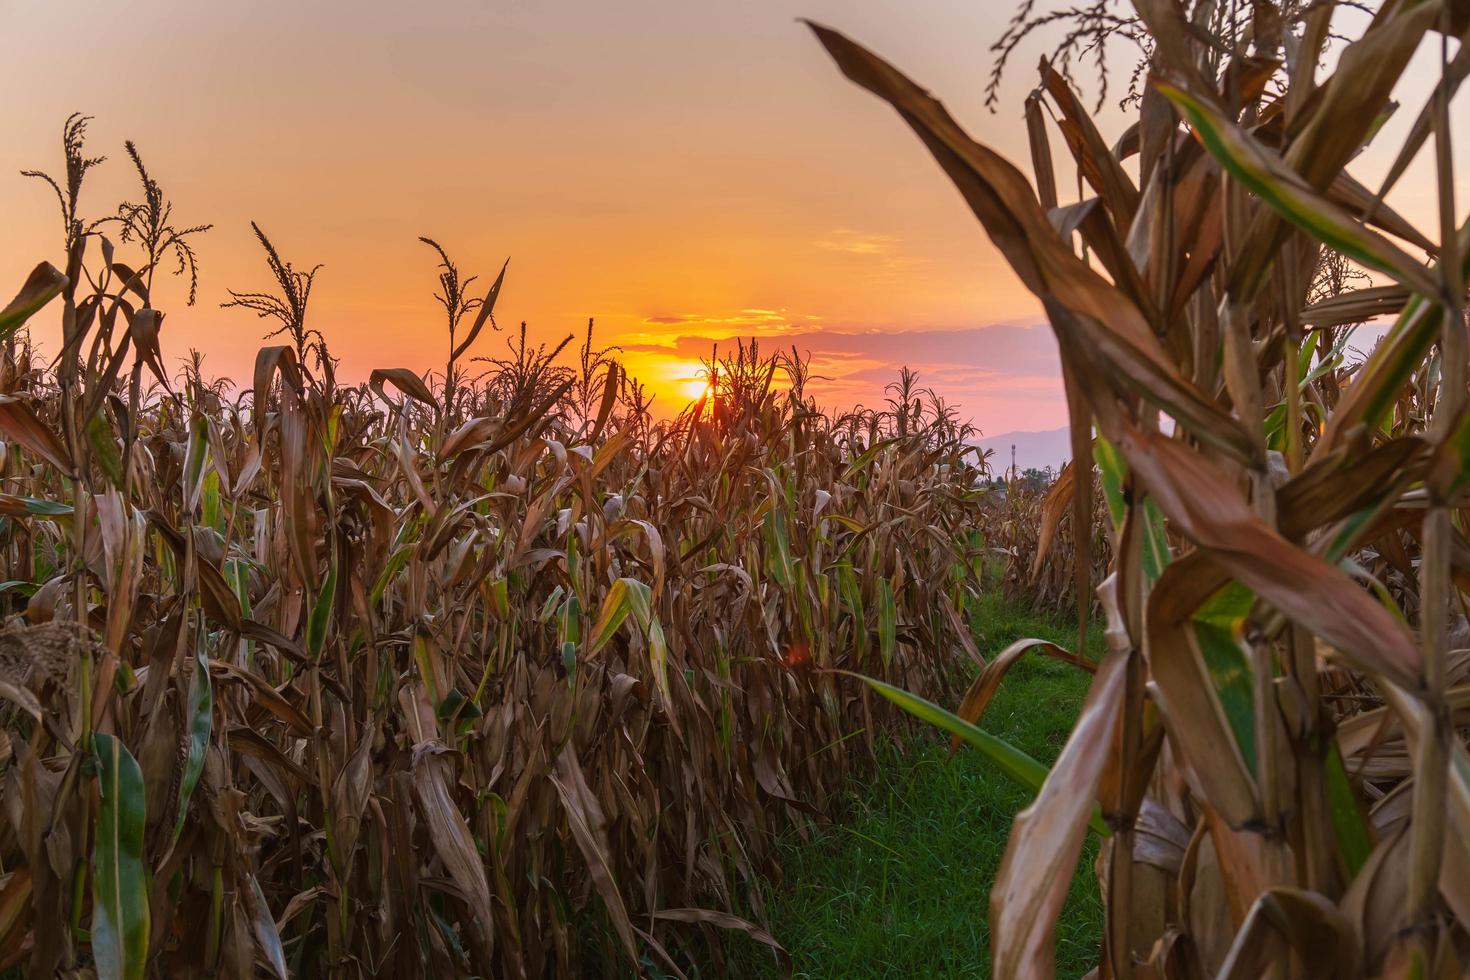 le coucher du soleil sur le champ de maïs photo